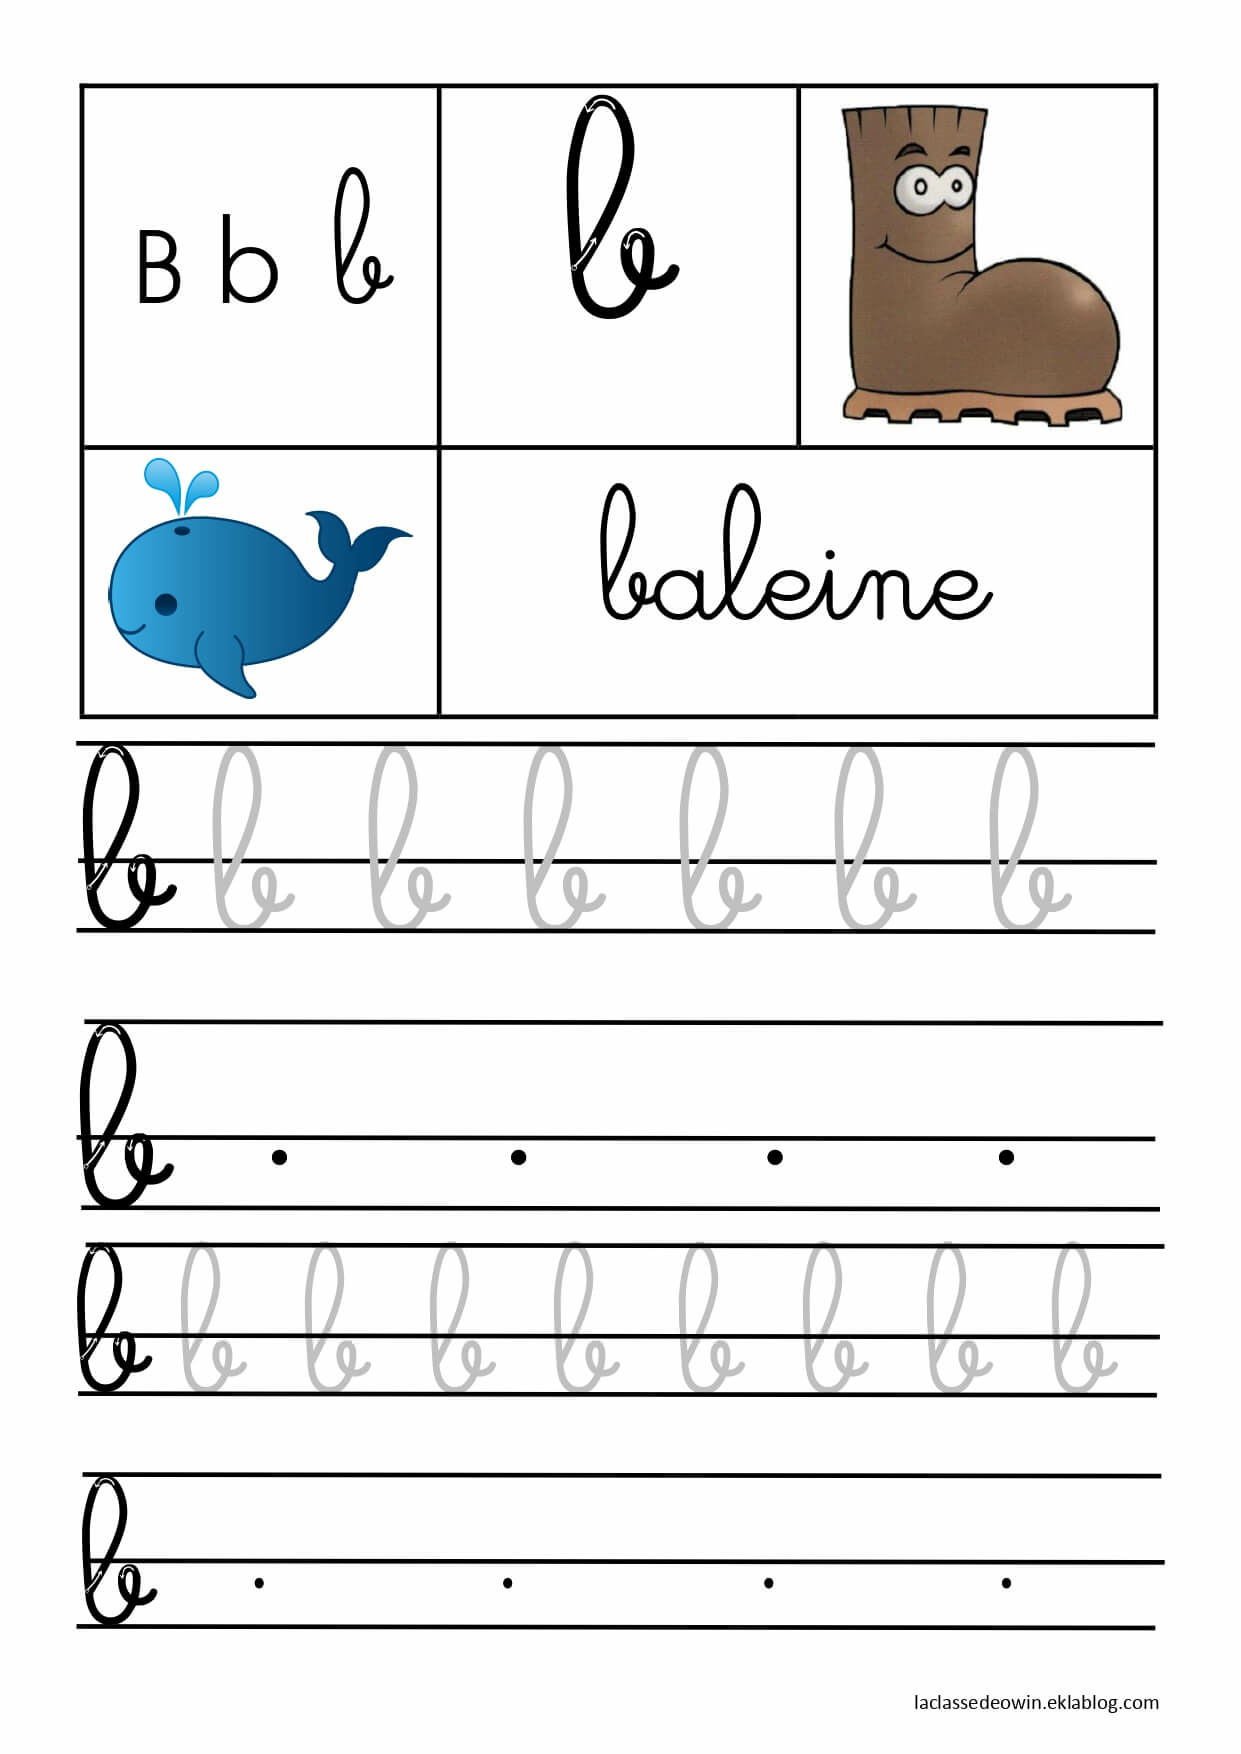   Lettre B pour baleine, écriture cursive GS 